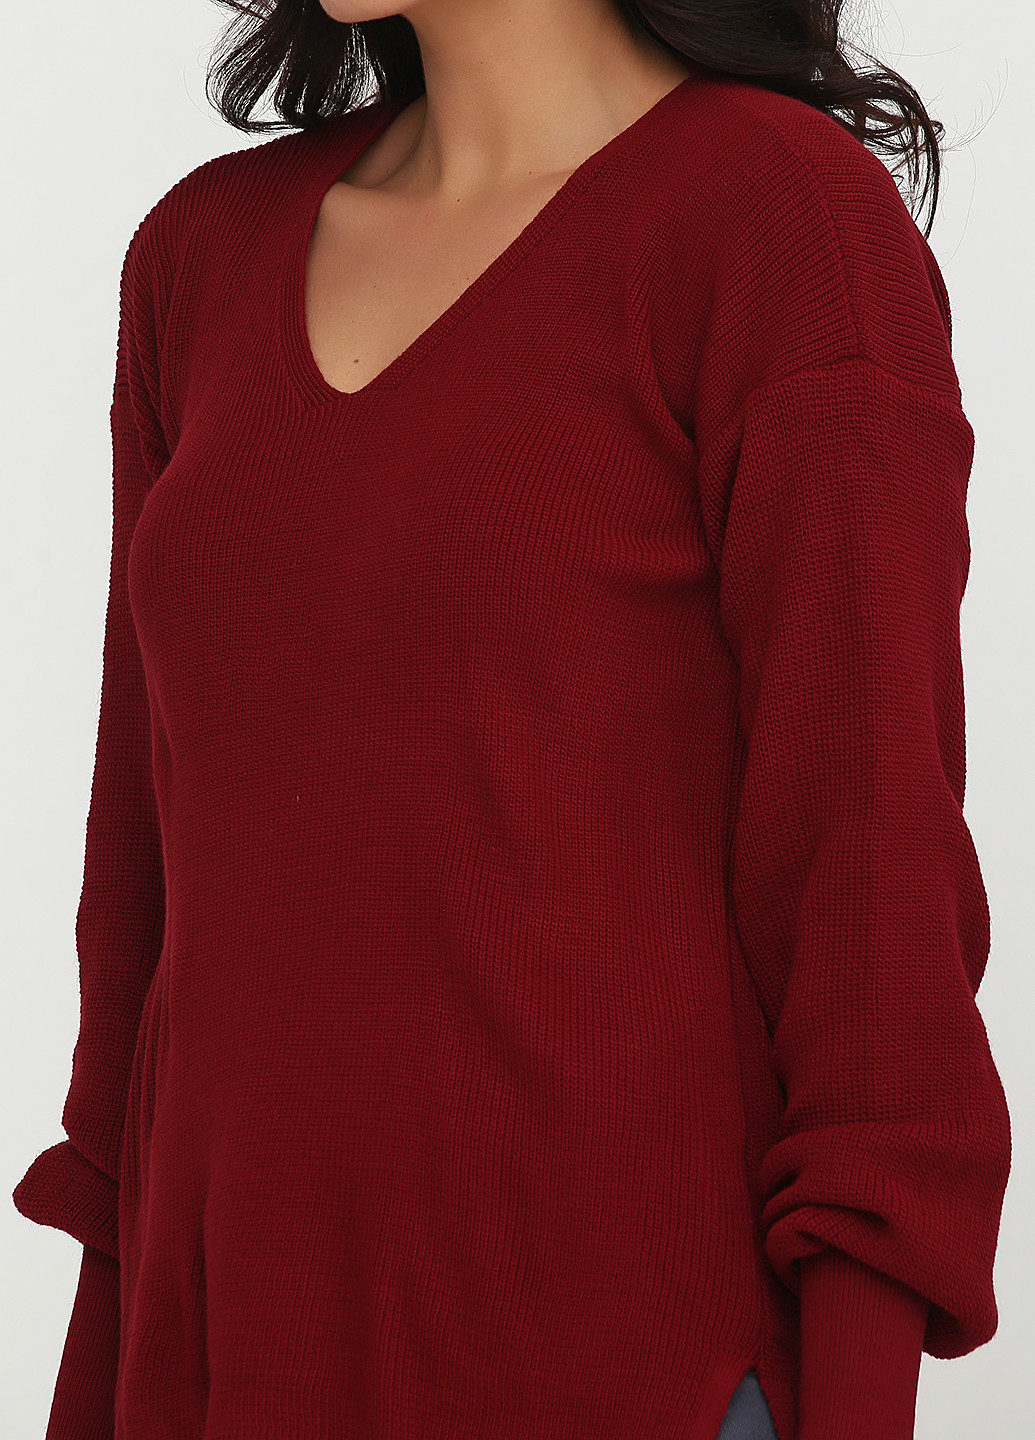 Бордовый демисезонный пуловер пуловер Babylon